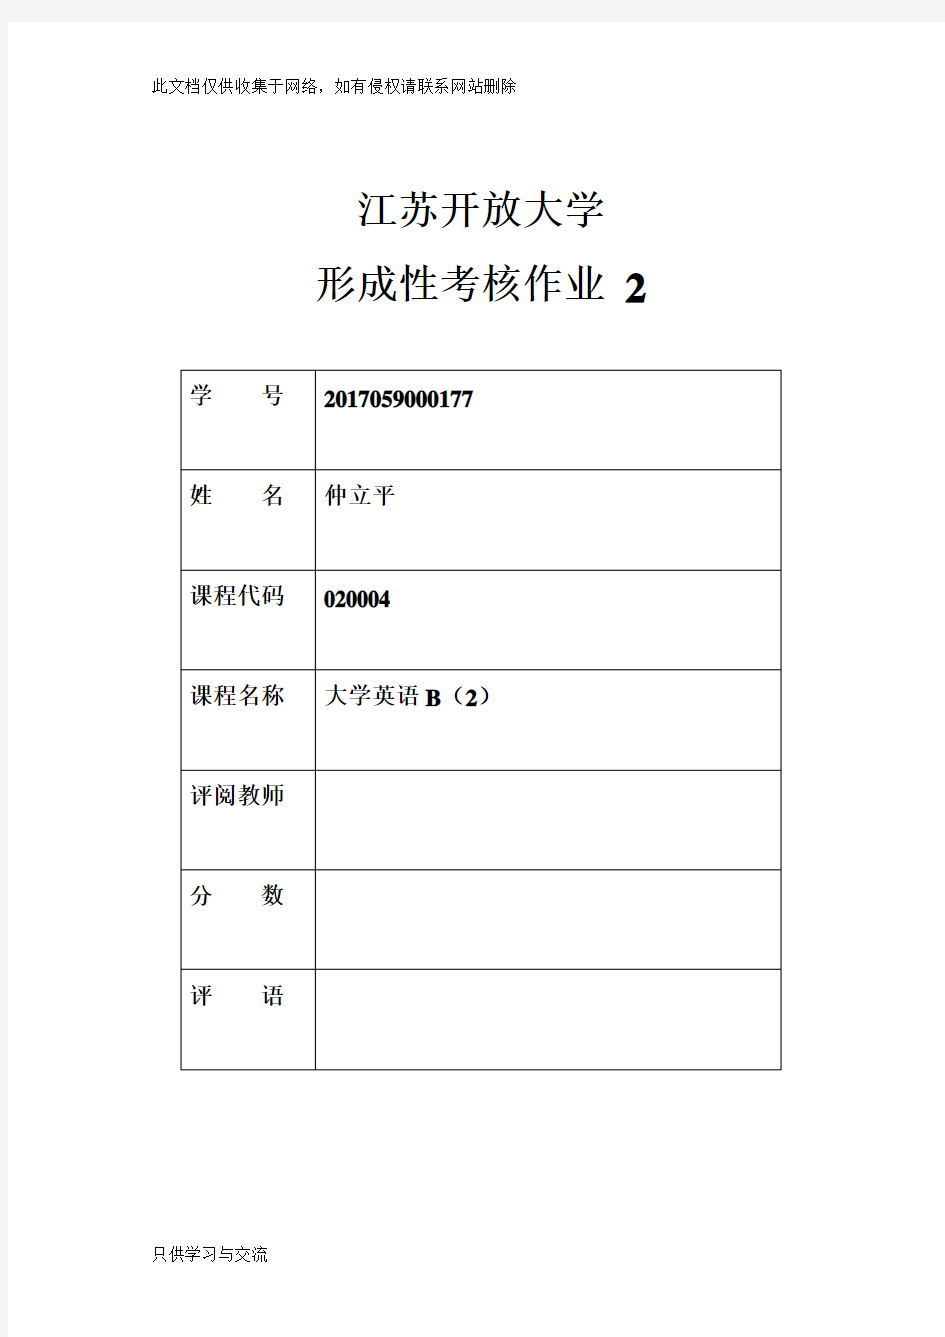 江苏开放大学英语(A)第二次形考作业教案资料